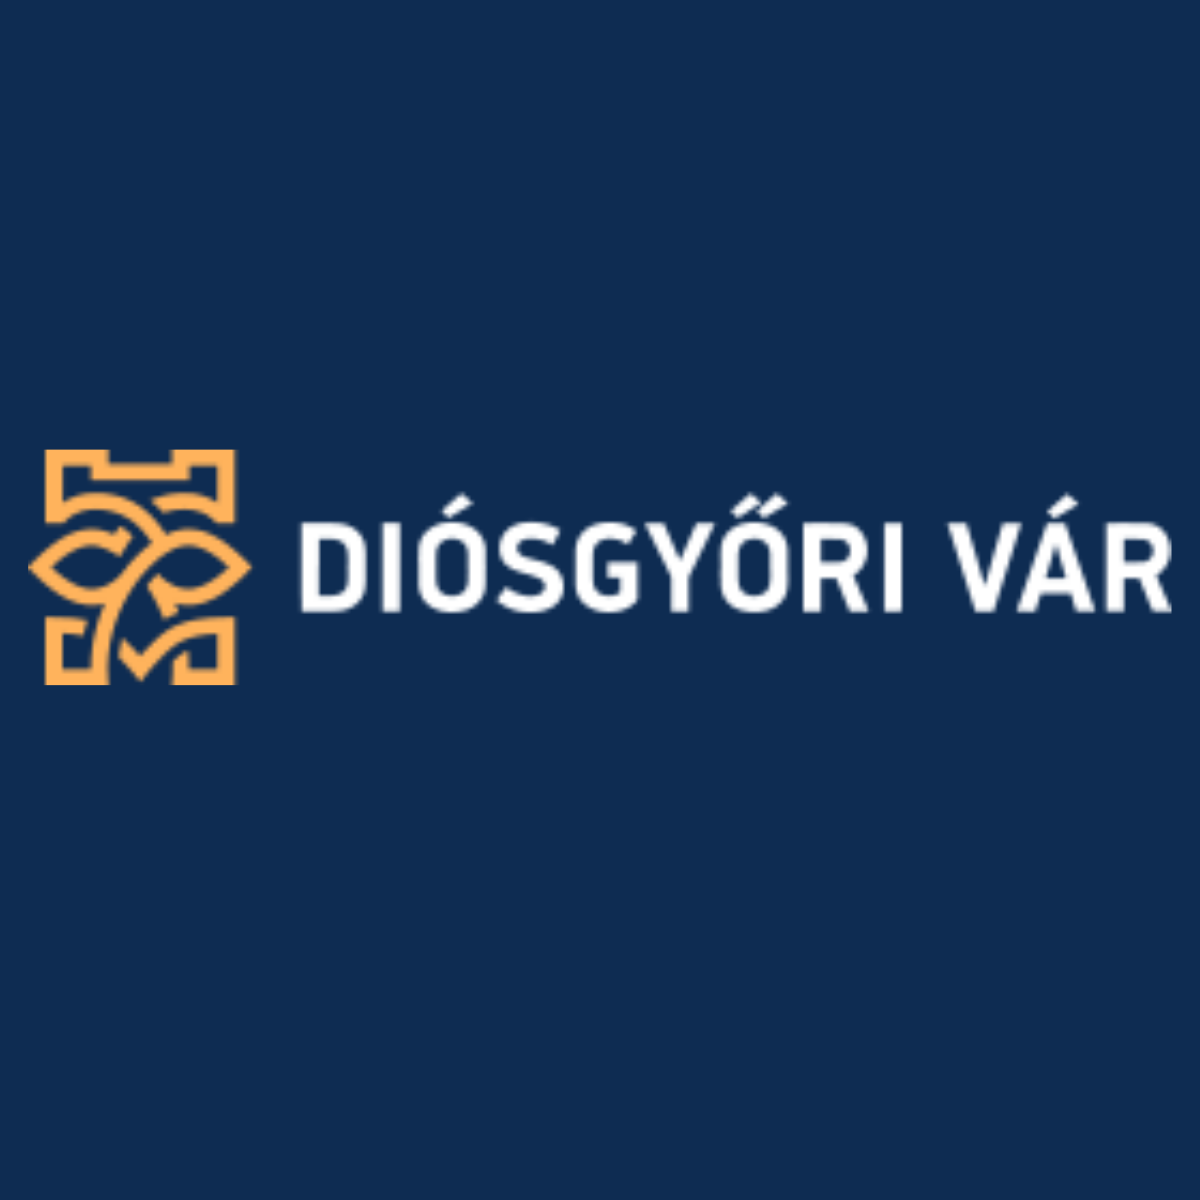 Diósgyőri vár - online marketingreferencia kép